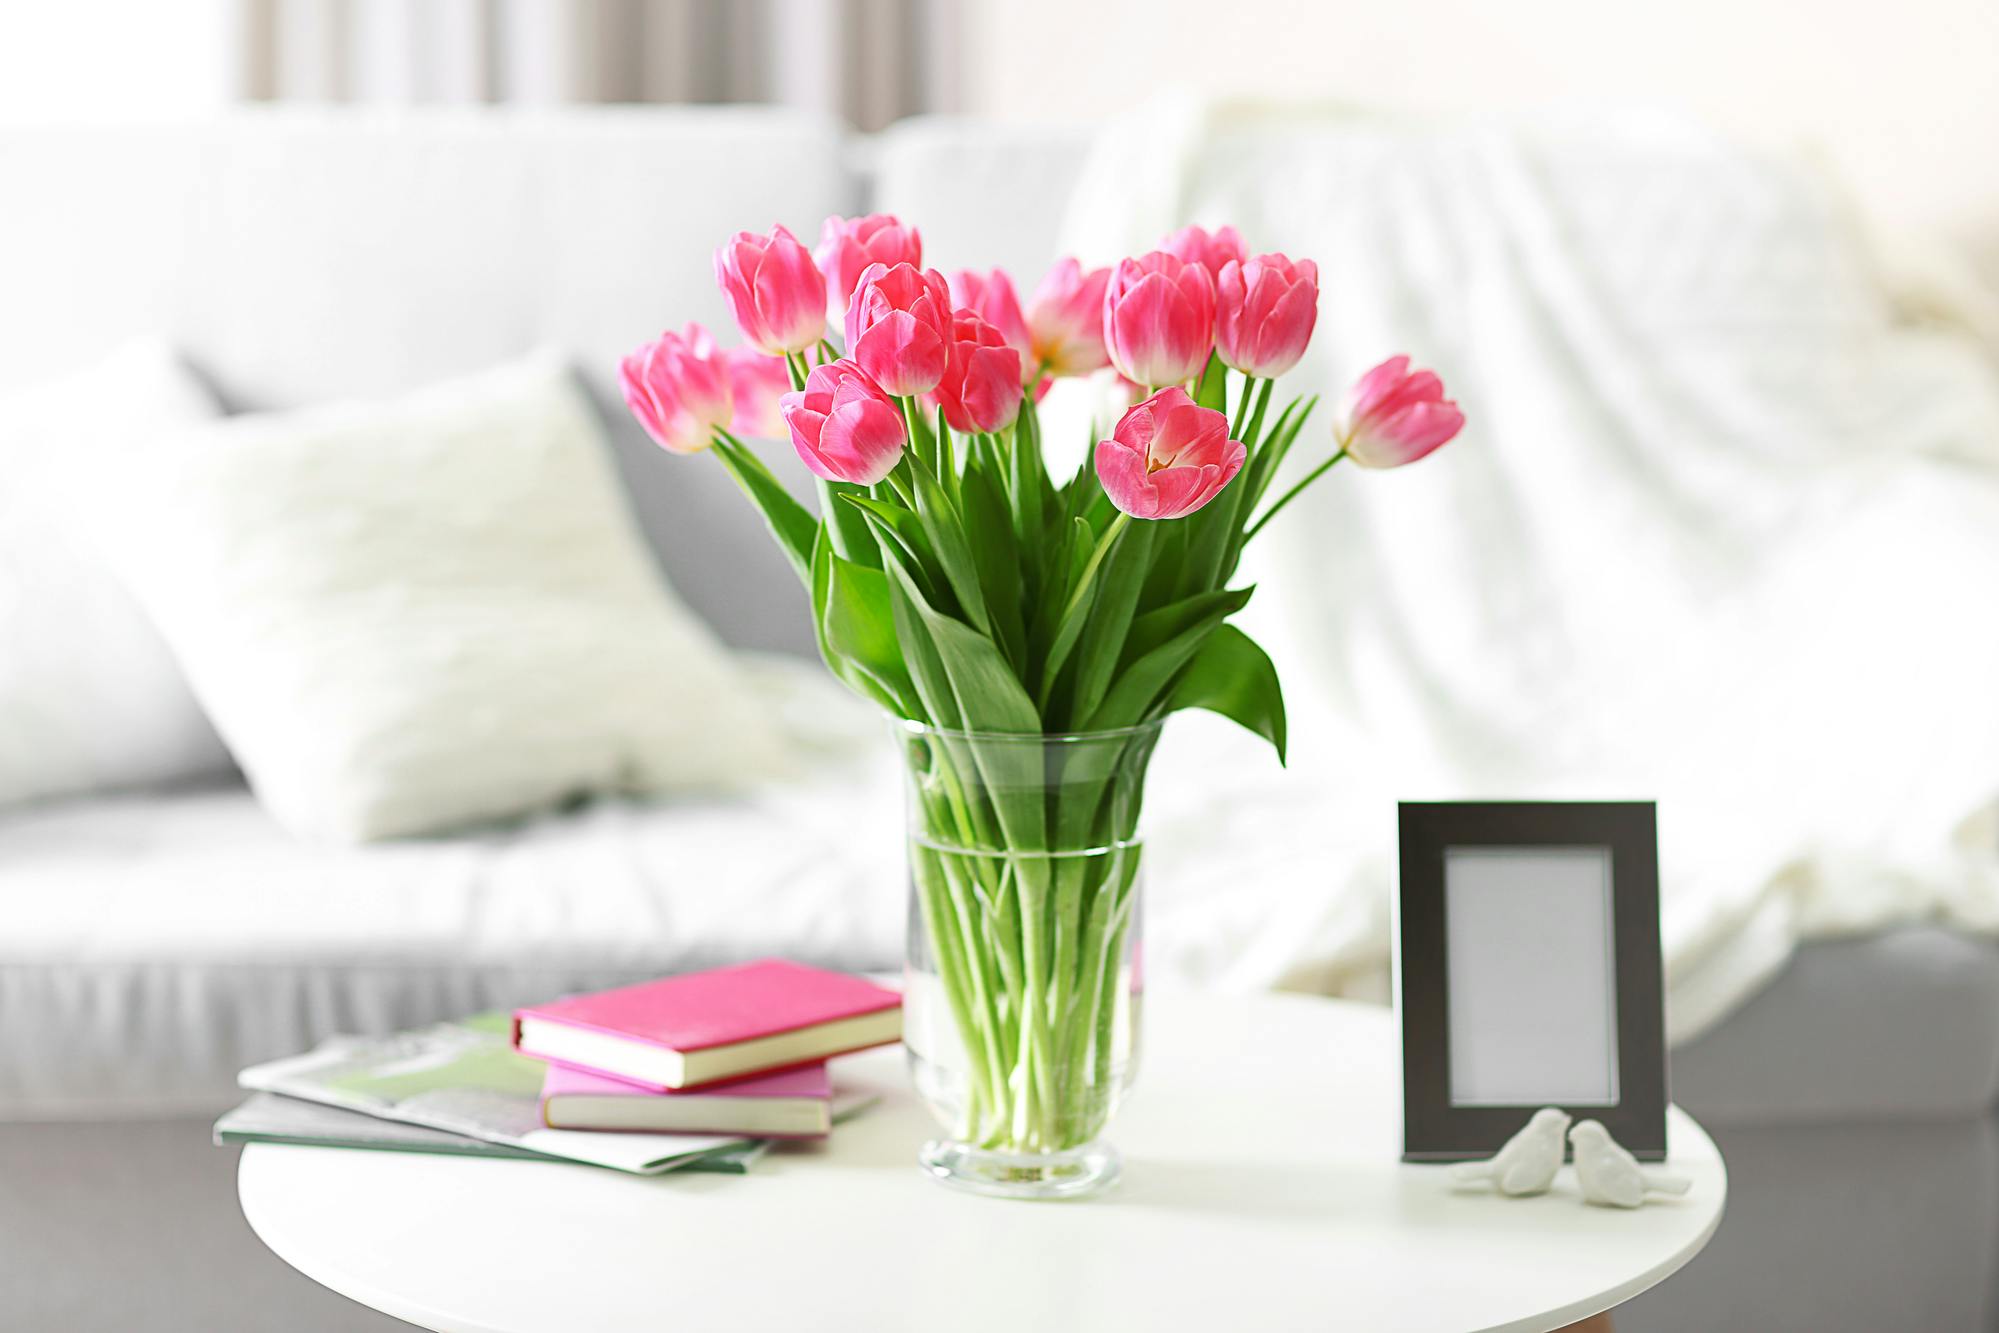 Bloemen online bestellen en aan huis laten leveren in heel België. Top 9 tips voor prachtige bloemen in huis deze zomer afbeelding 2